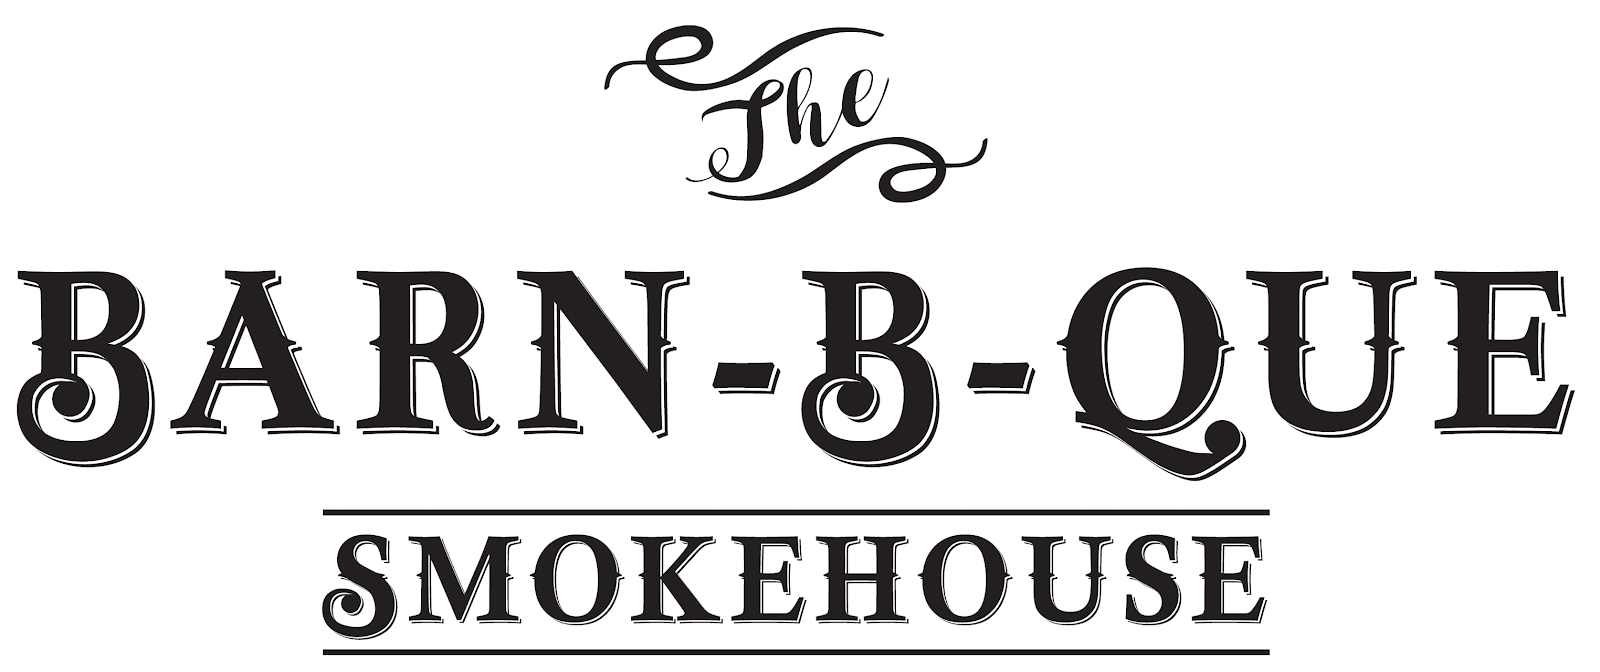 Barn-B-Que Smokehouse